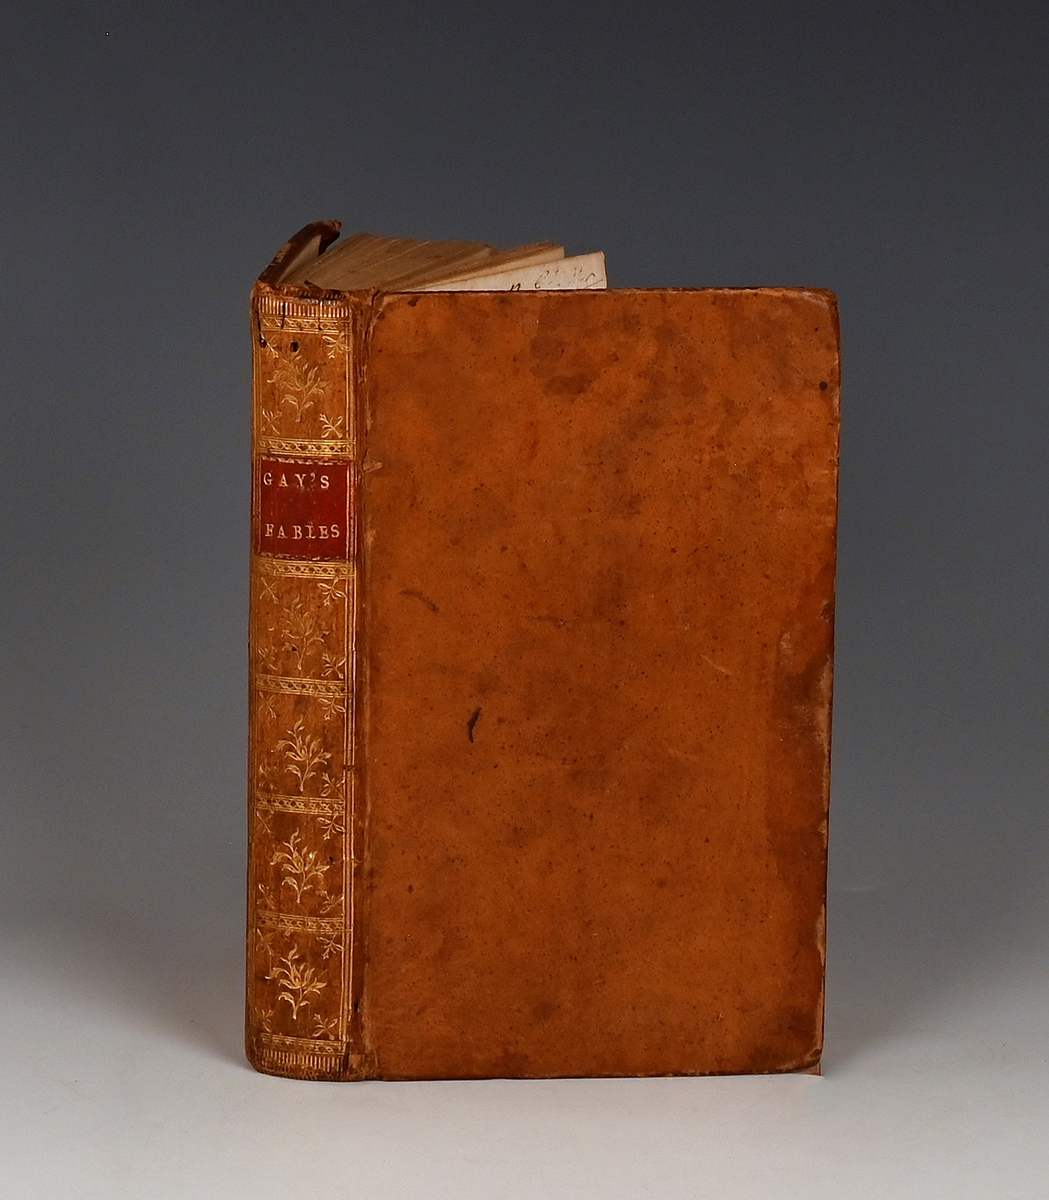 Prot: "Fables" av Mr. Gay. London 1783. 240 s. 6. Med kobberstik. Samtid. helskindsbd.